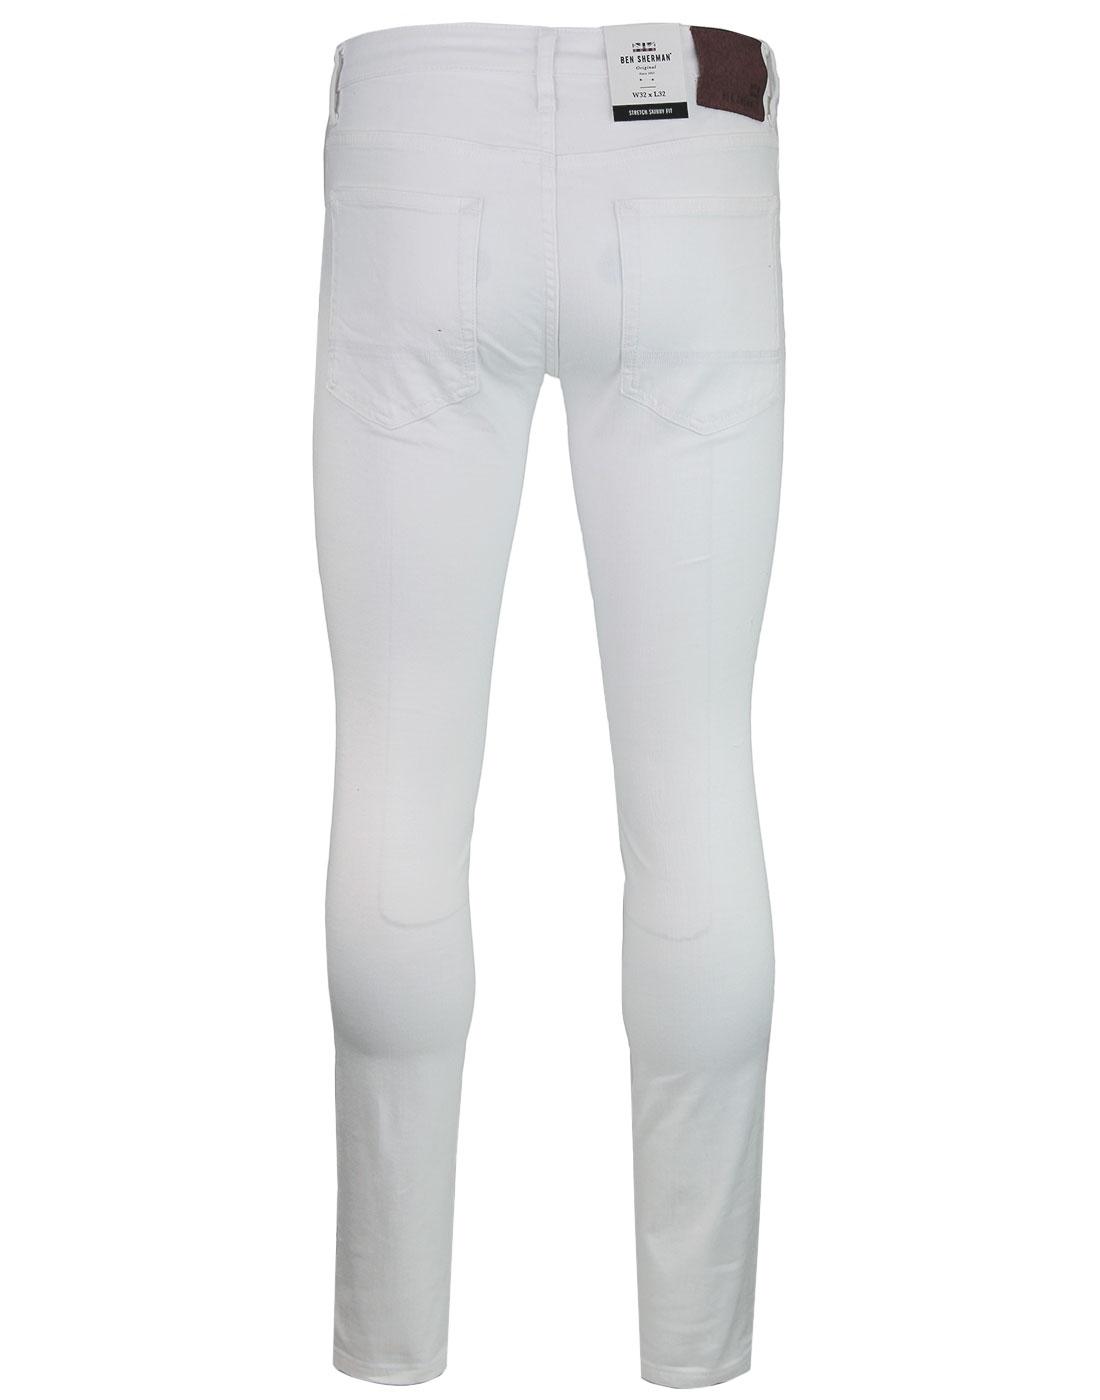 BEN SHERMAN Men's Retro 1960s Mod White Skinny Jeans